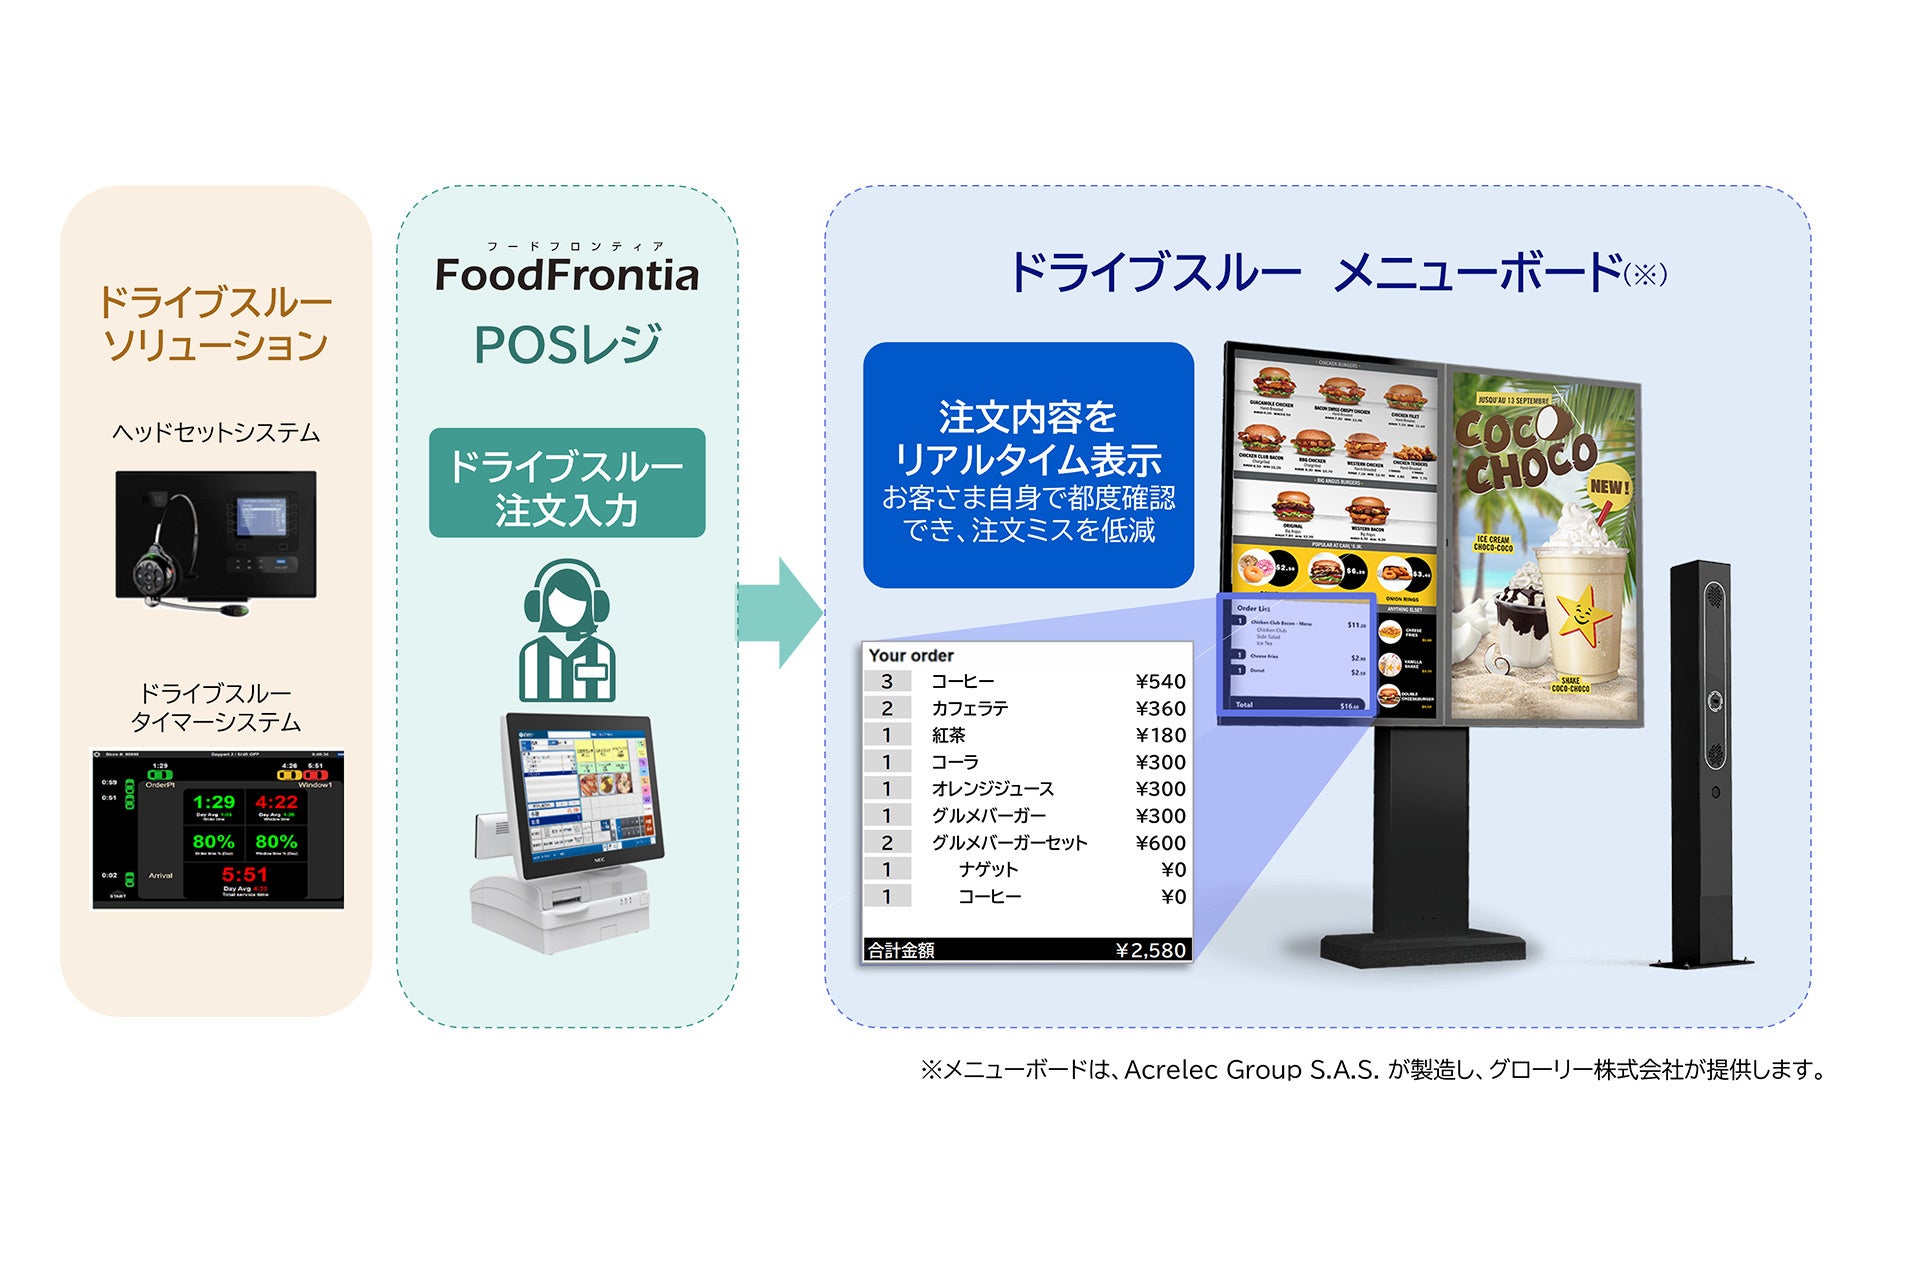 NECプラットフォームズ、飲食店向けPOSレジシステム「FoodFrontia」とドライブスルーのメニューボードをシステム連携